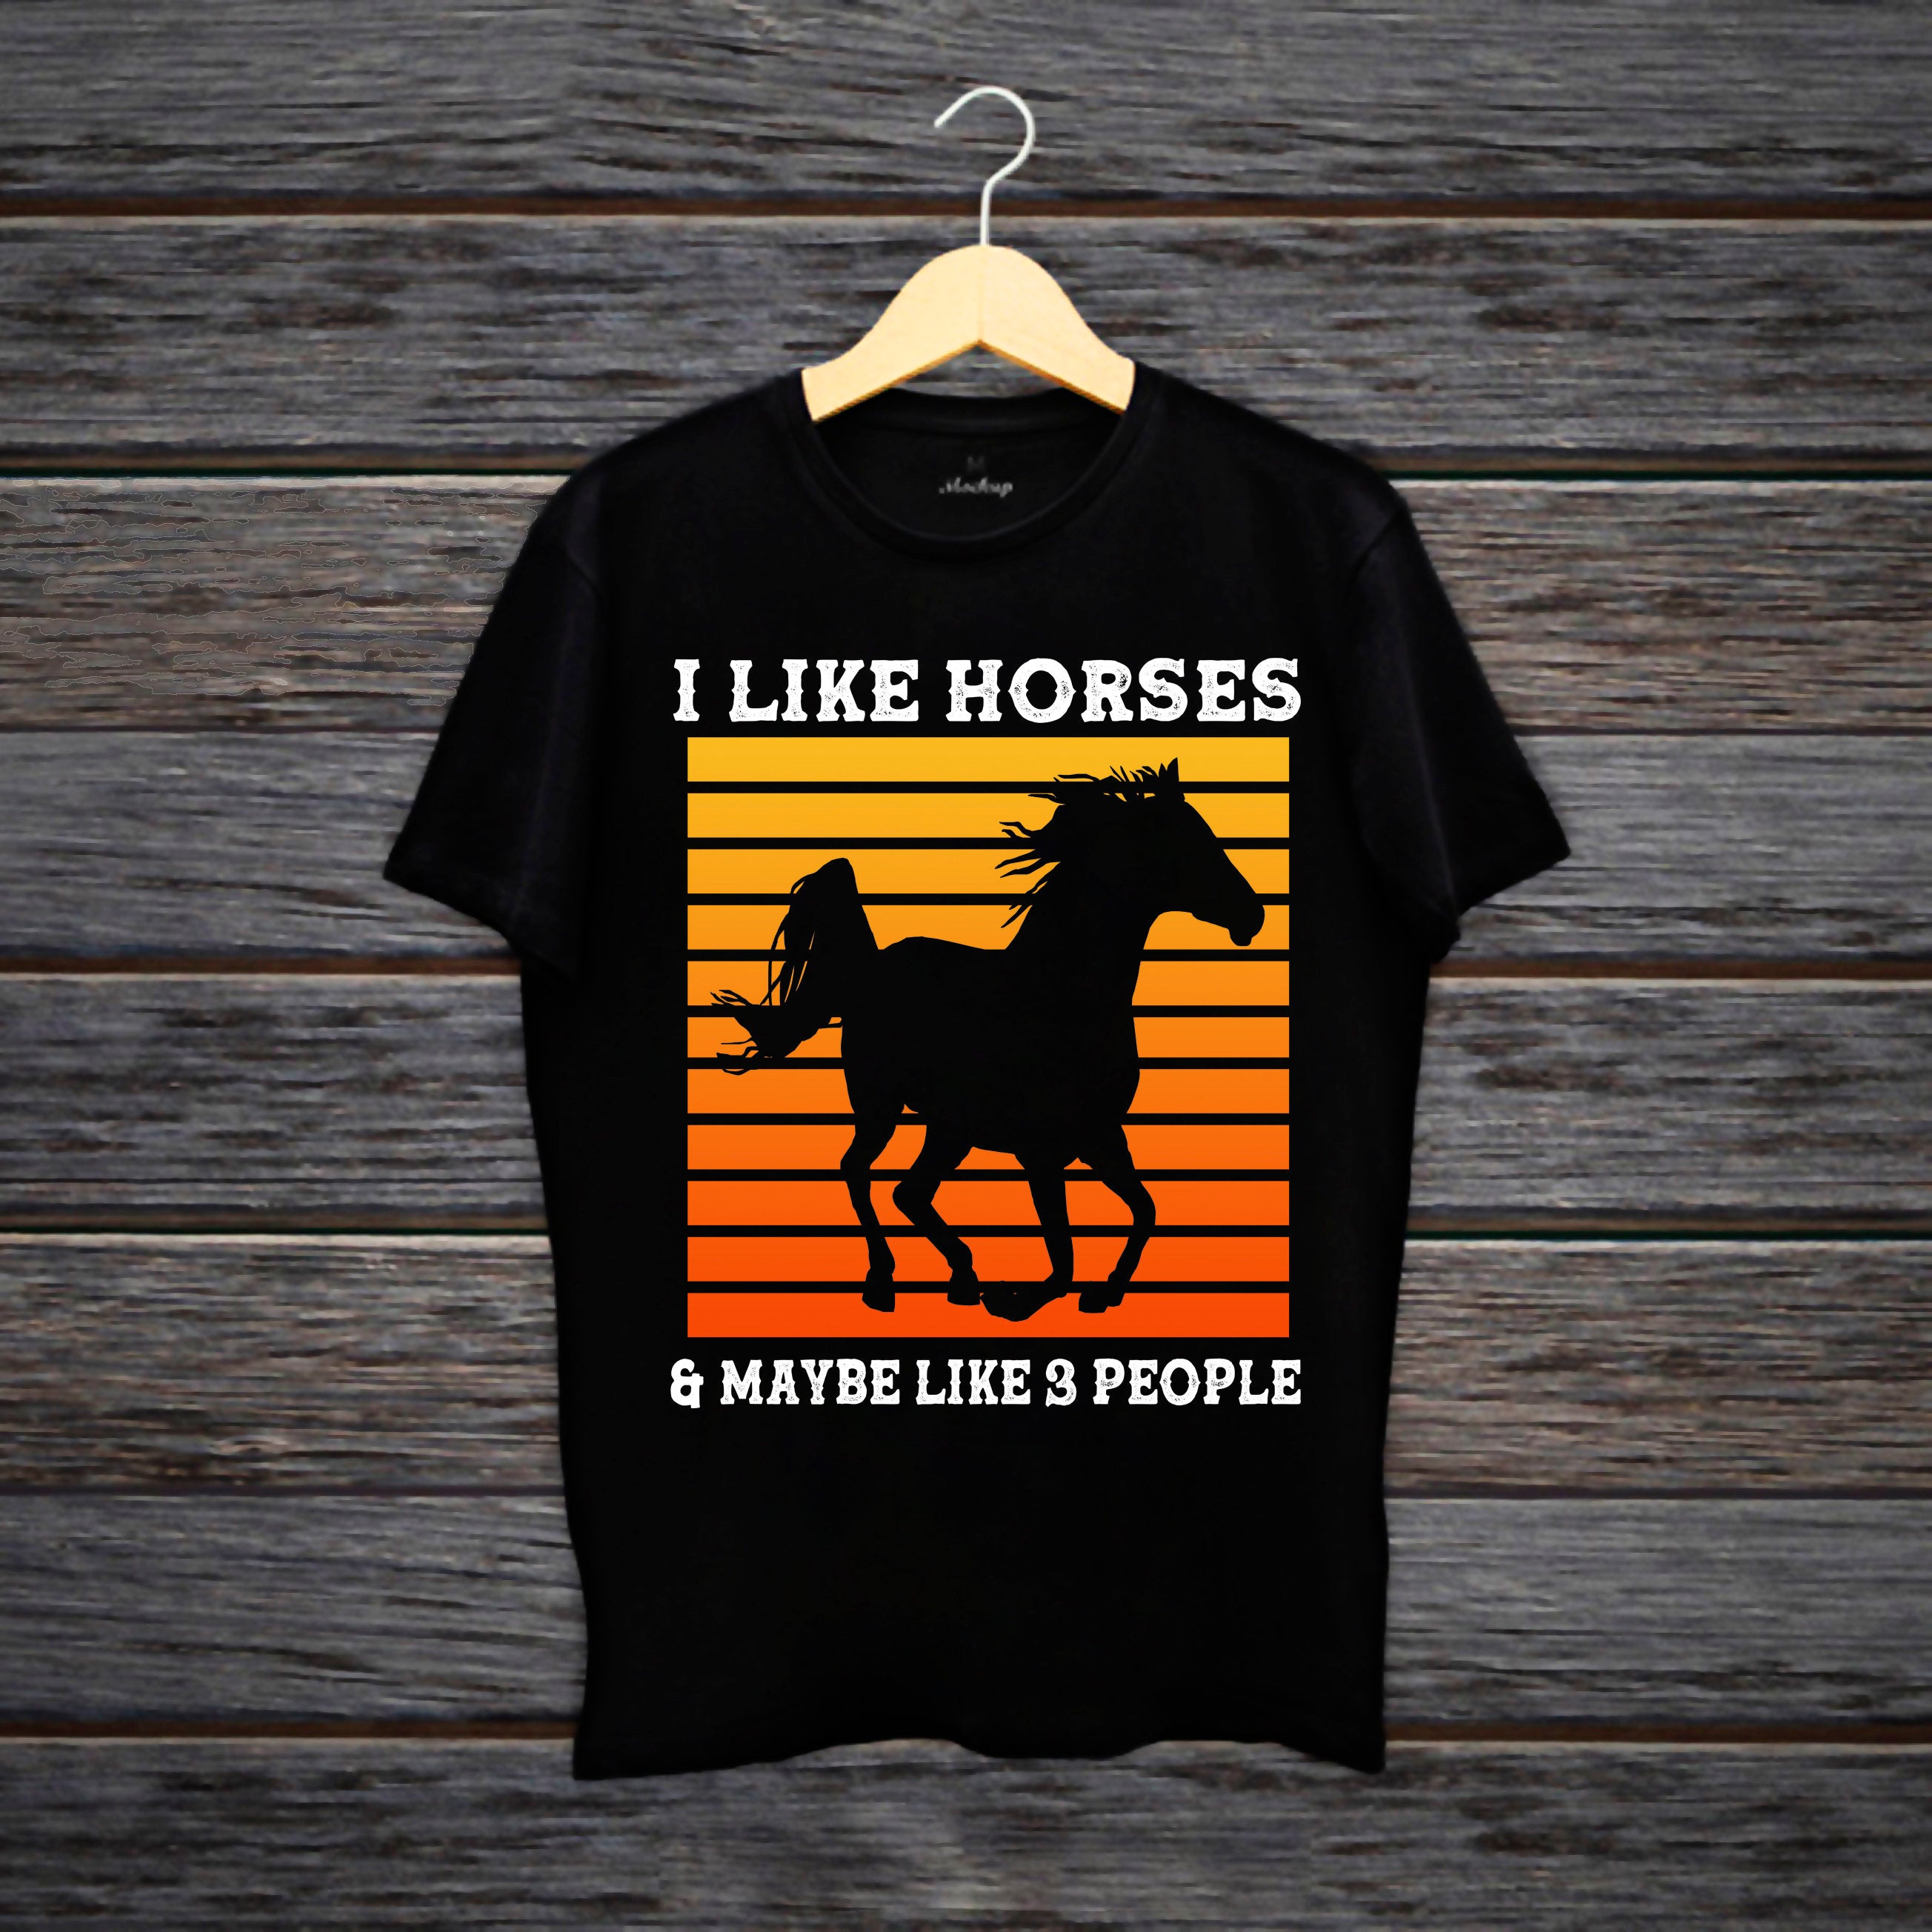 Man patinka žirgų šunys ir galbūt 3 žmonių marškinėliai, marškinėliai arkliams, mergaičių marškinėliai arkliams, dovana arklio savininkui, ūkininko marškinėliai, arklio dovana, arklio marškinėliai - plusminusco.com